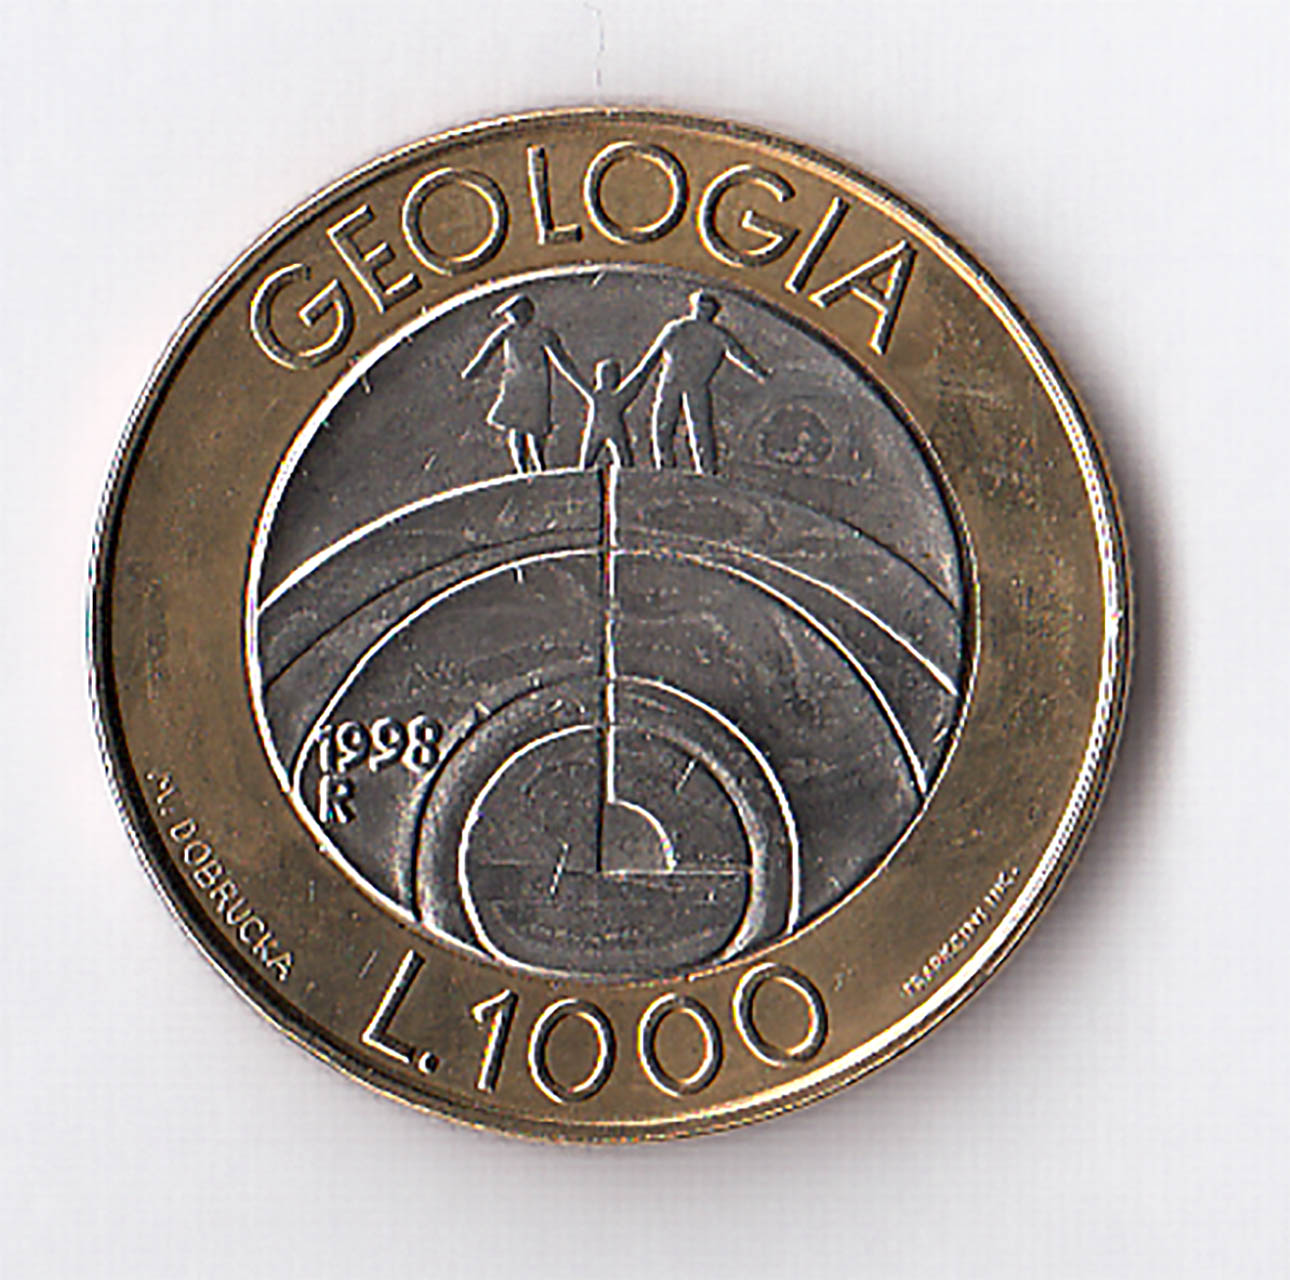 1998 Lire 1000 Bimetallica Geologia Fior di Conio San Marino